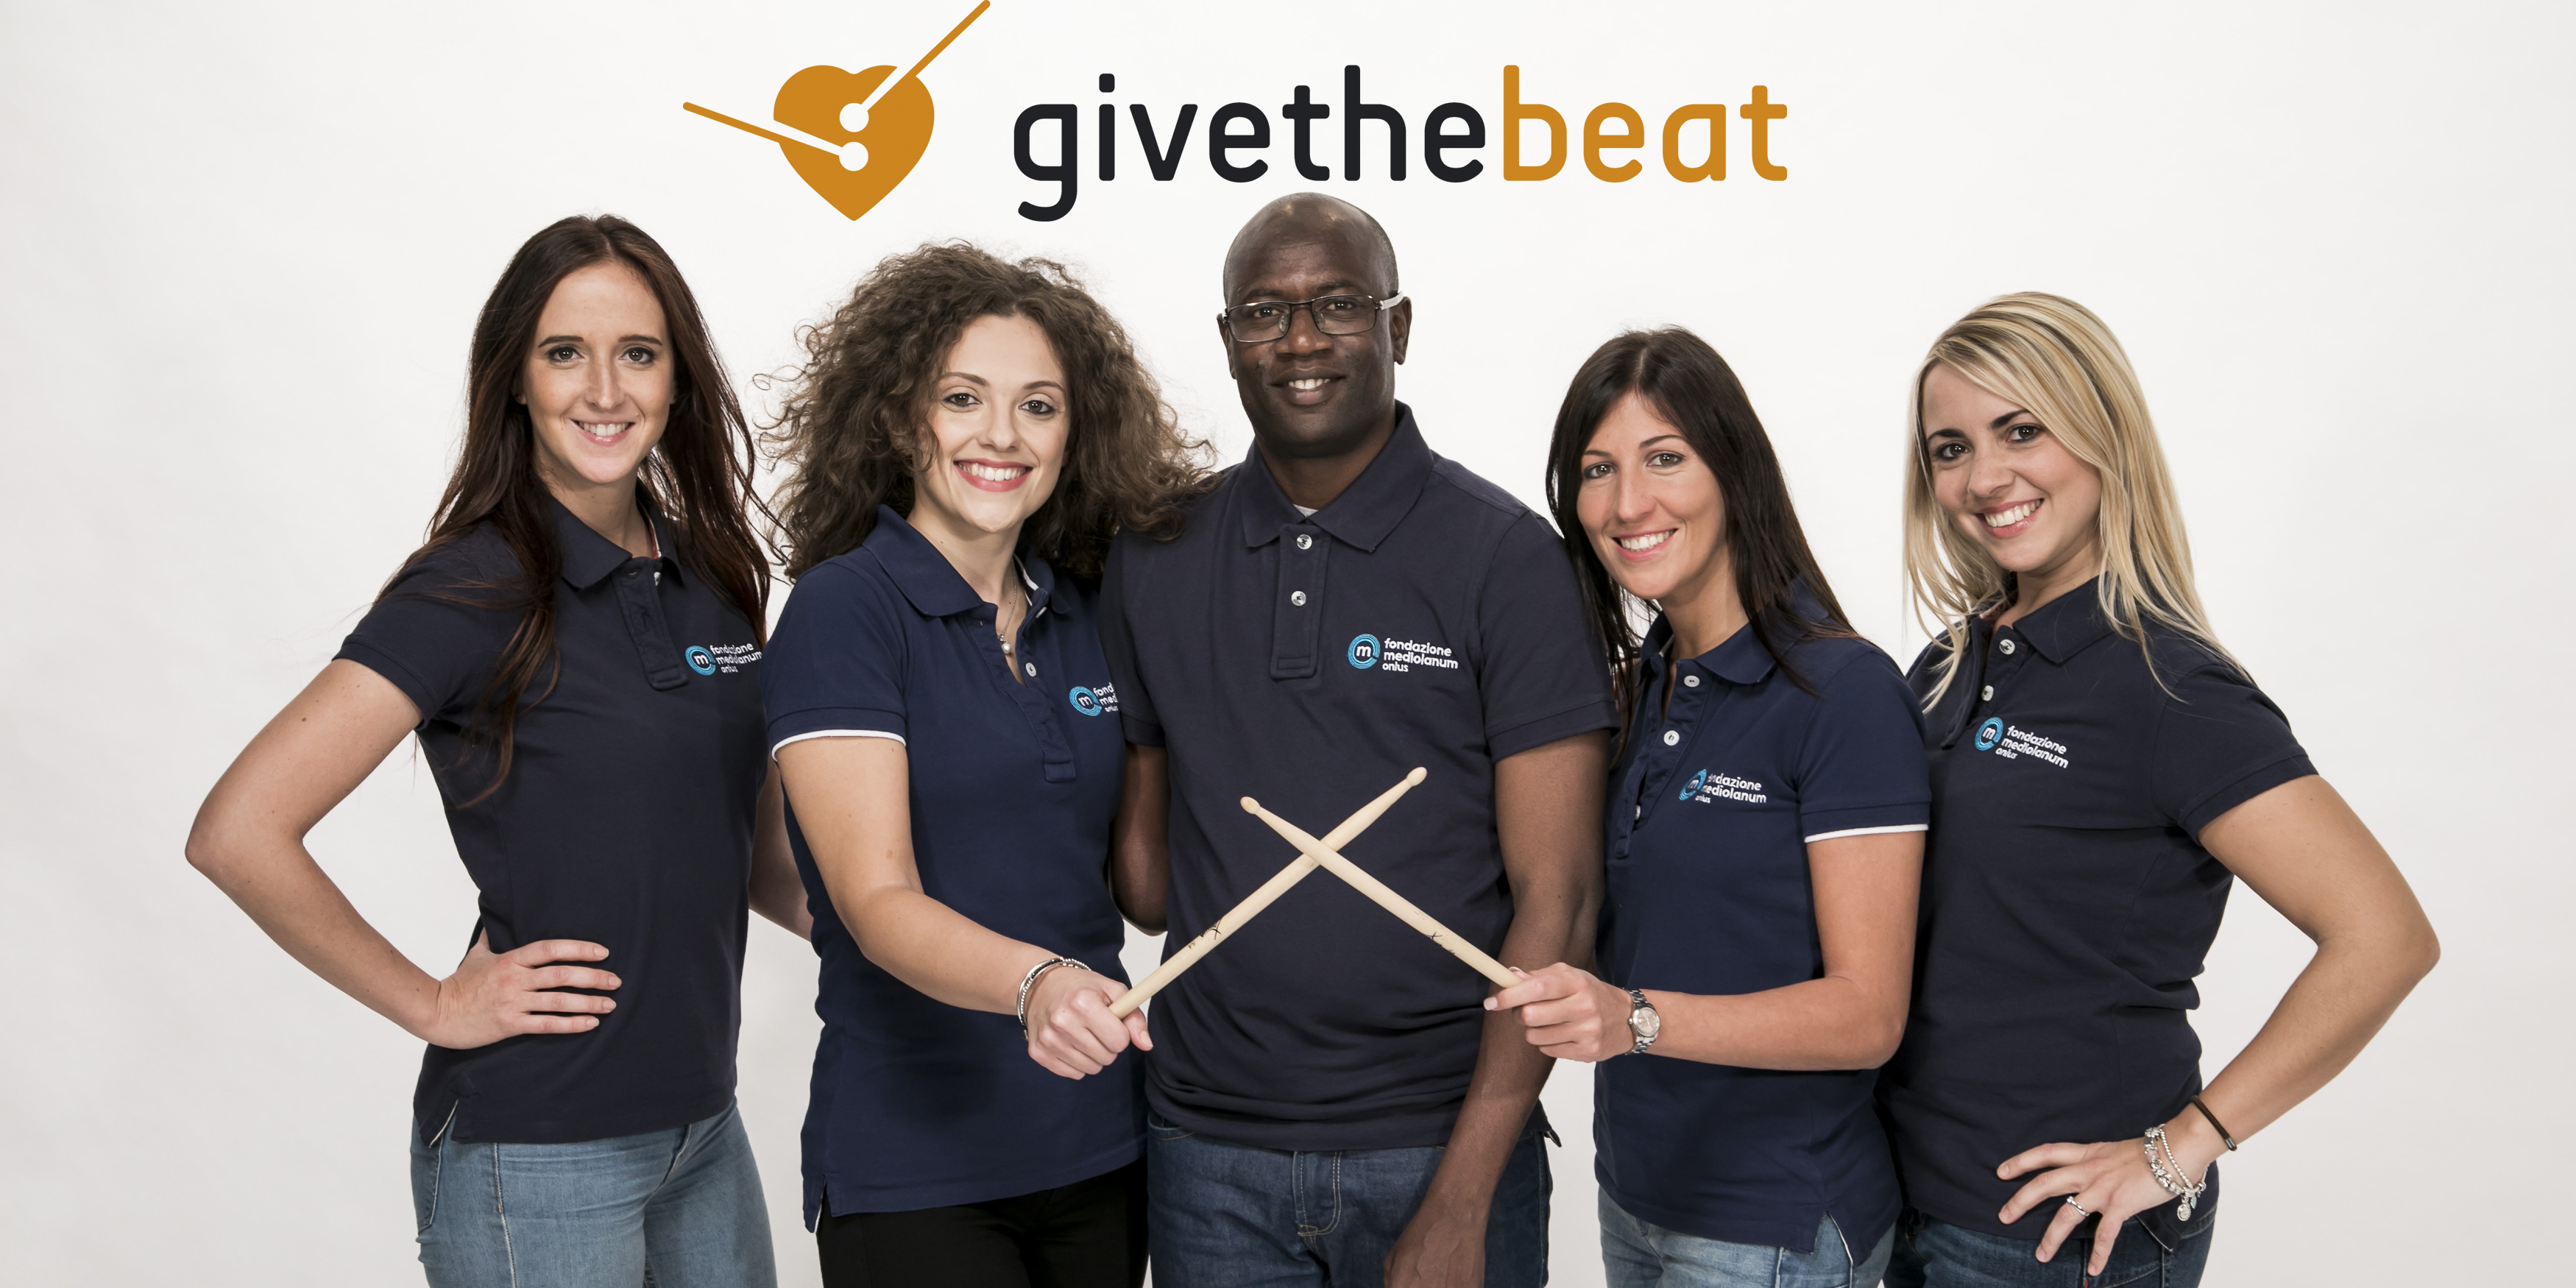 #GivetheBeat Team Eldi-Alessandra Brera